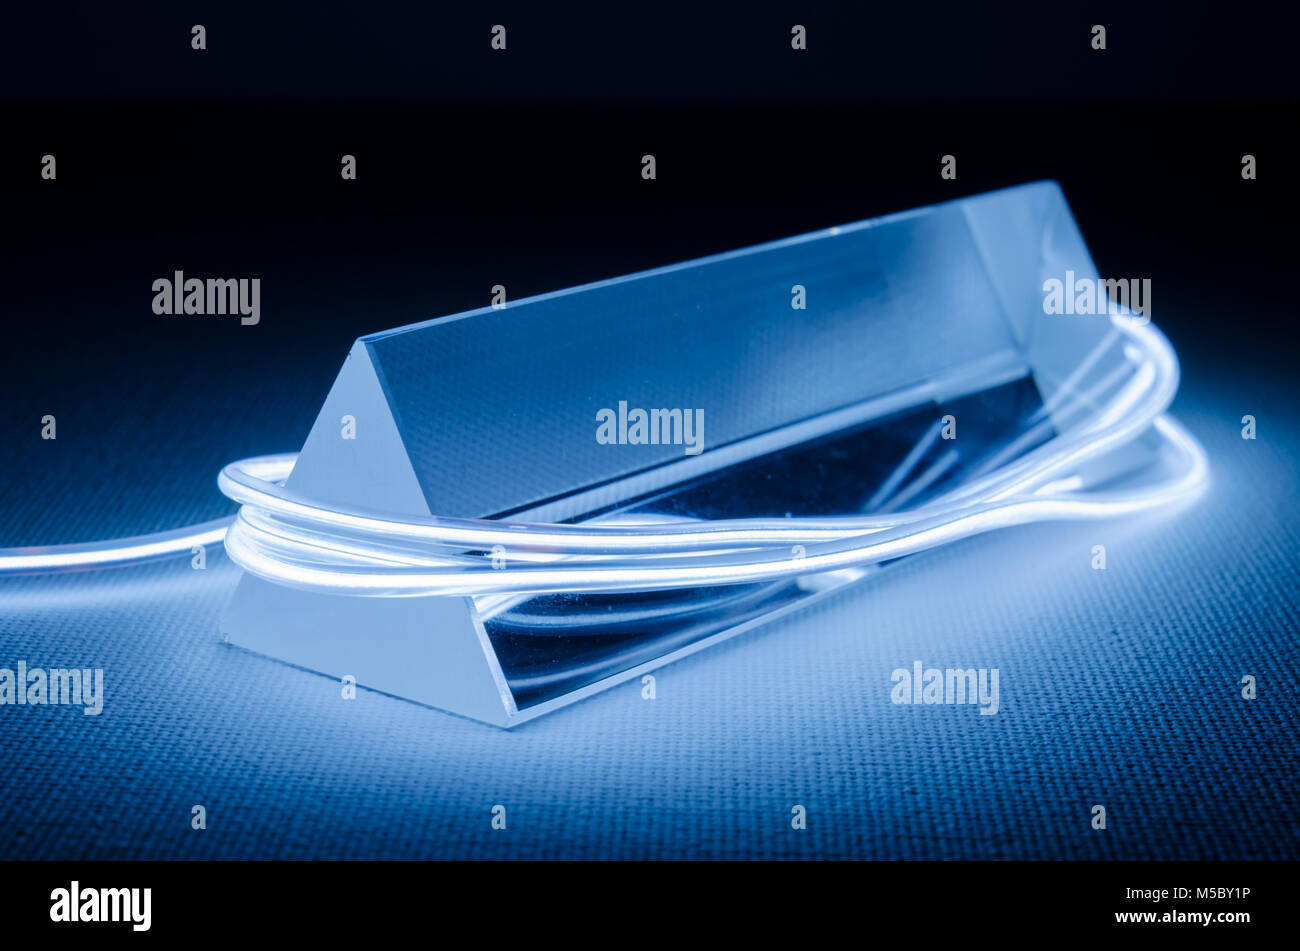 Un Studio still-life fotografia di un vetro triangolare prisma con Abstract illuminazione al neon in Blue-Gray Foto Stock